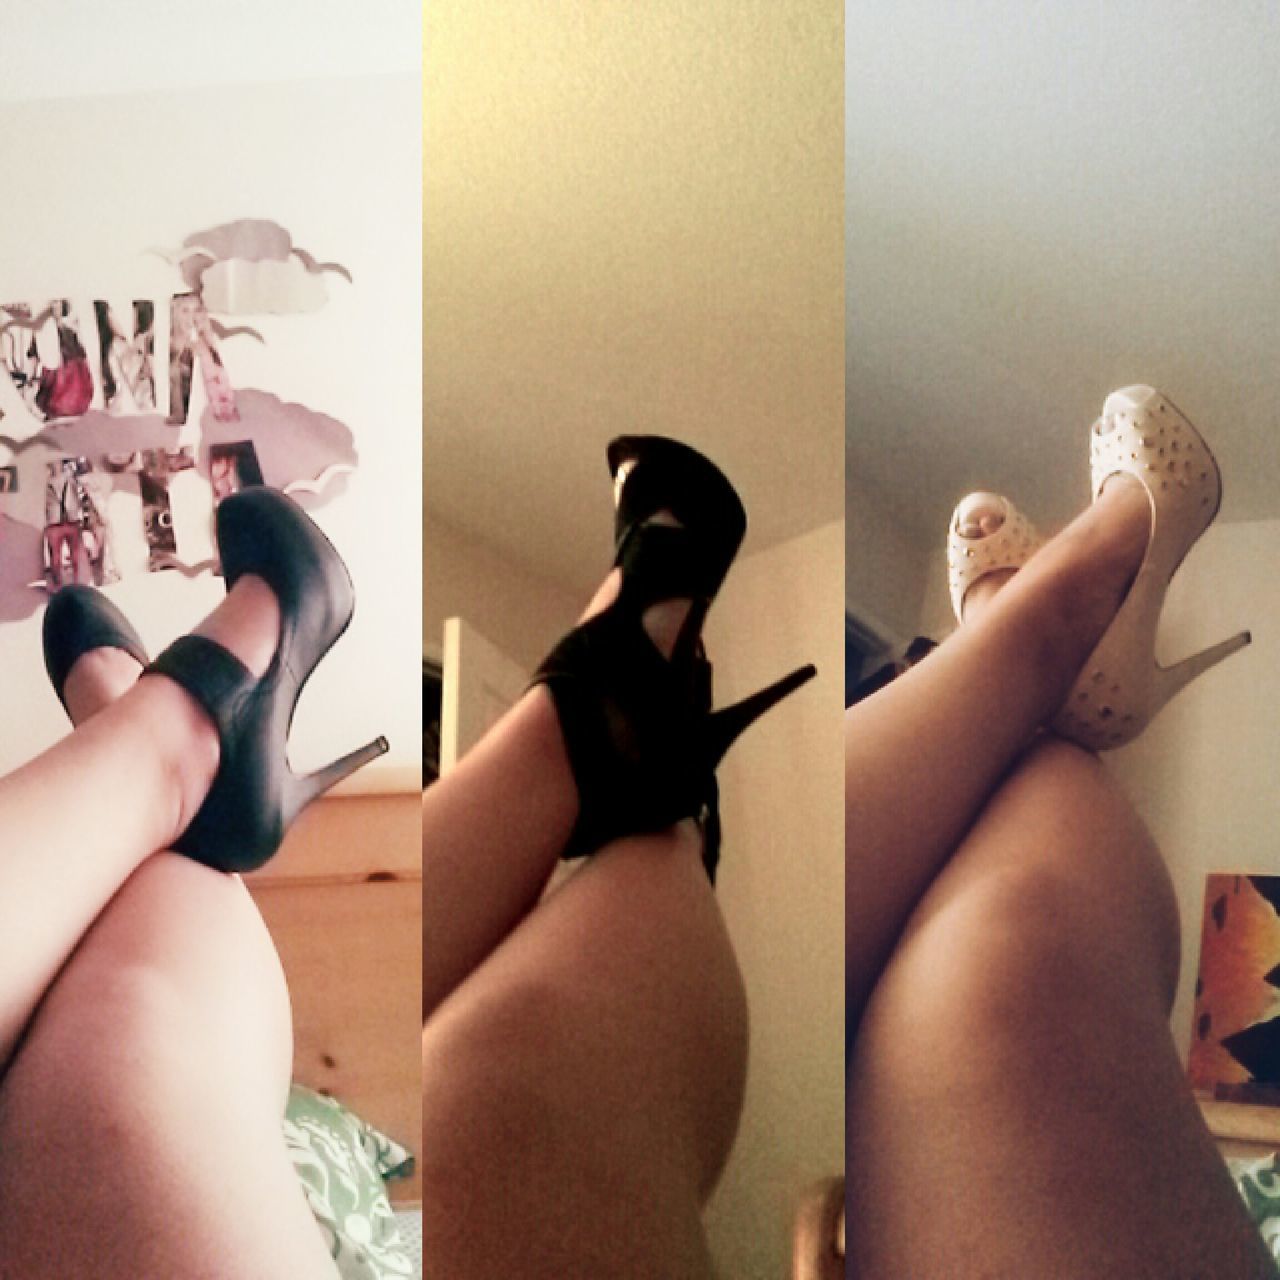 My heels